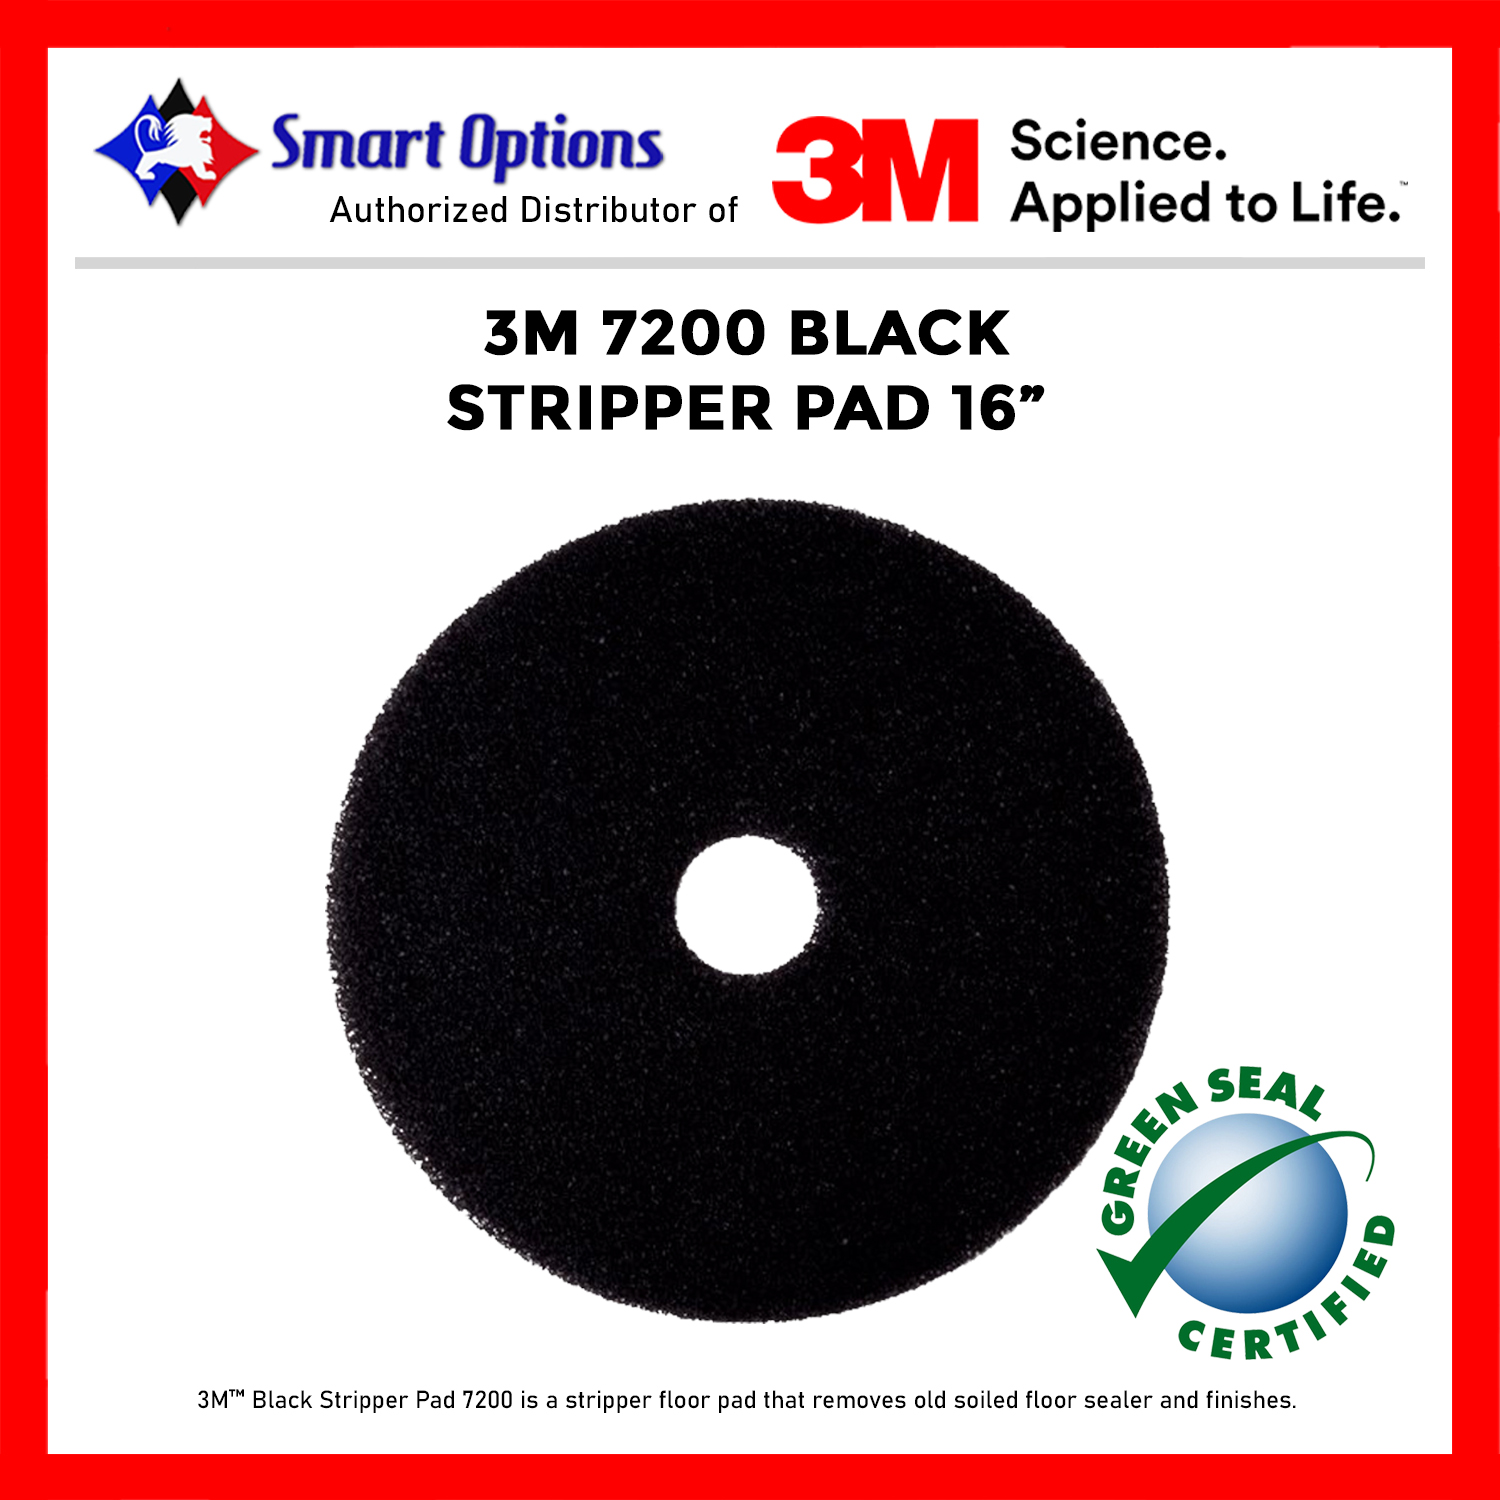 3M™ Black Stripper Pad 7200